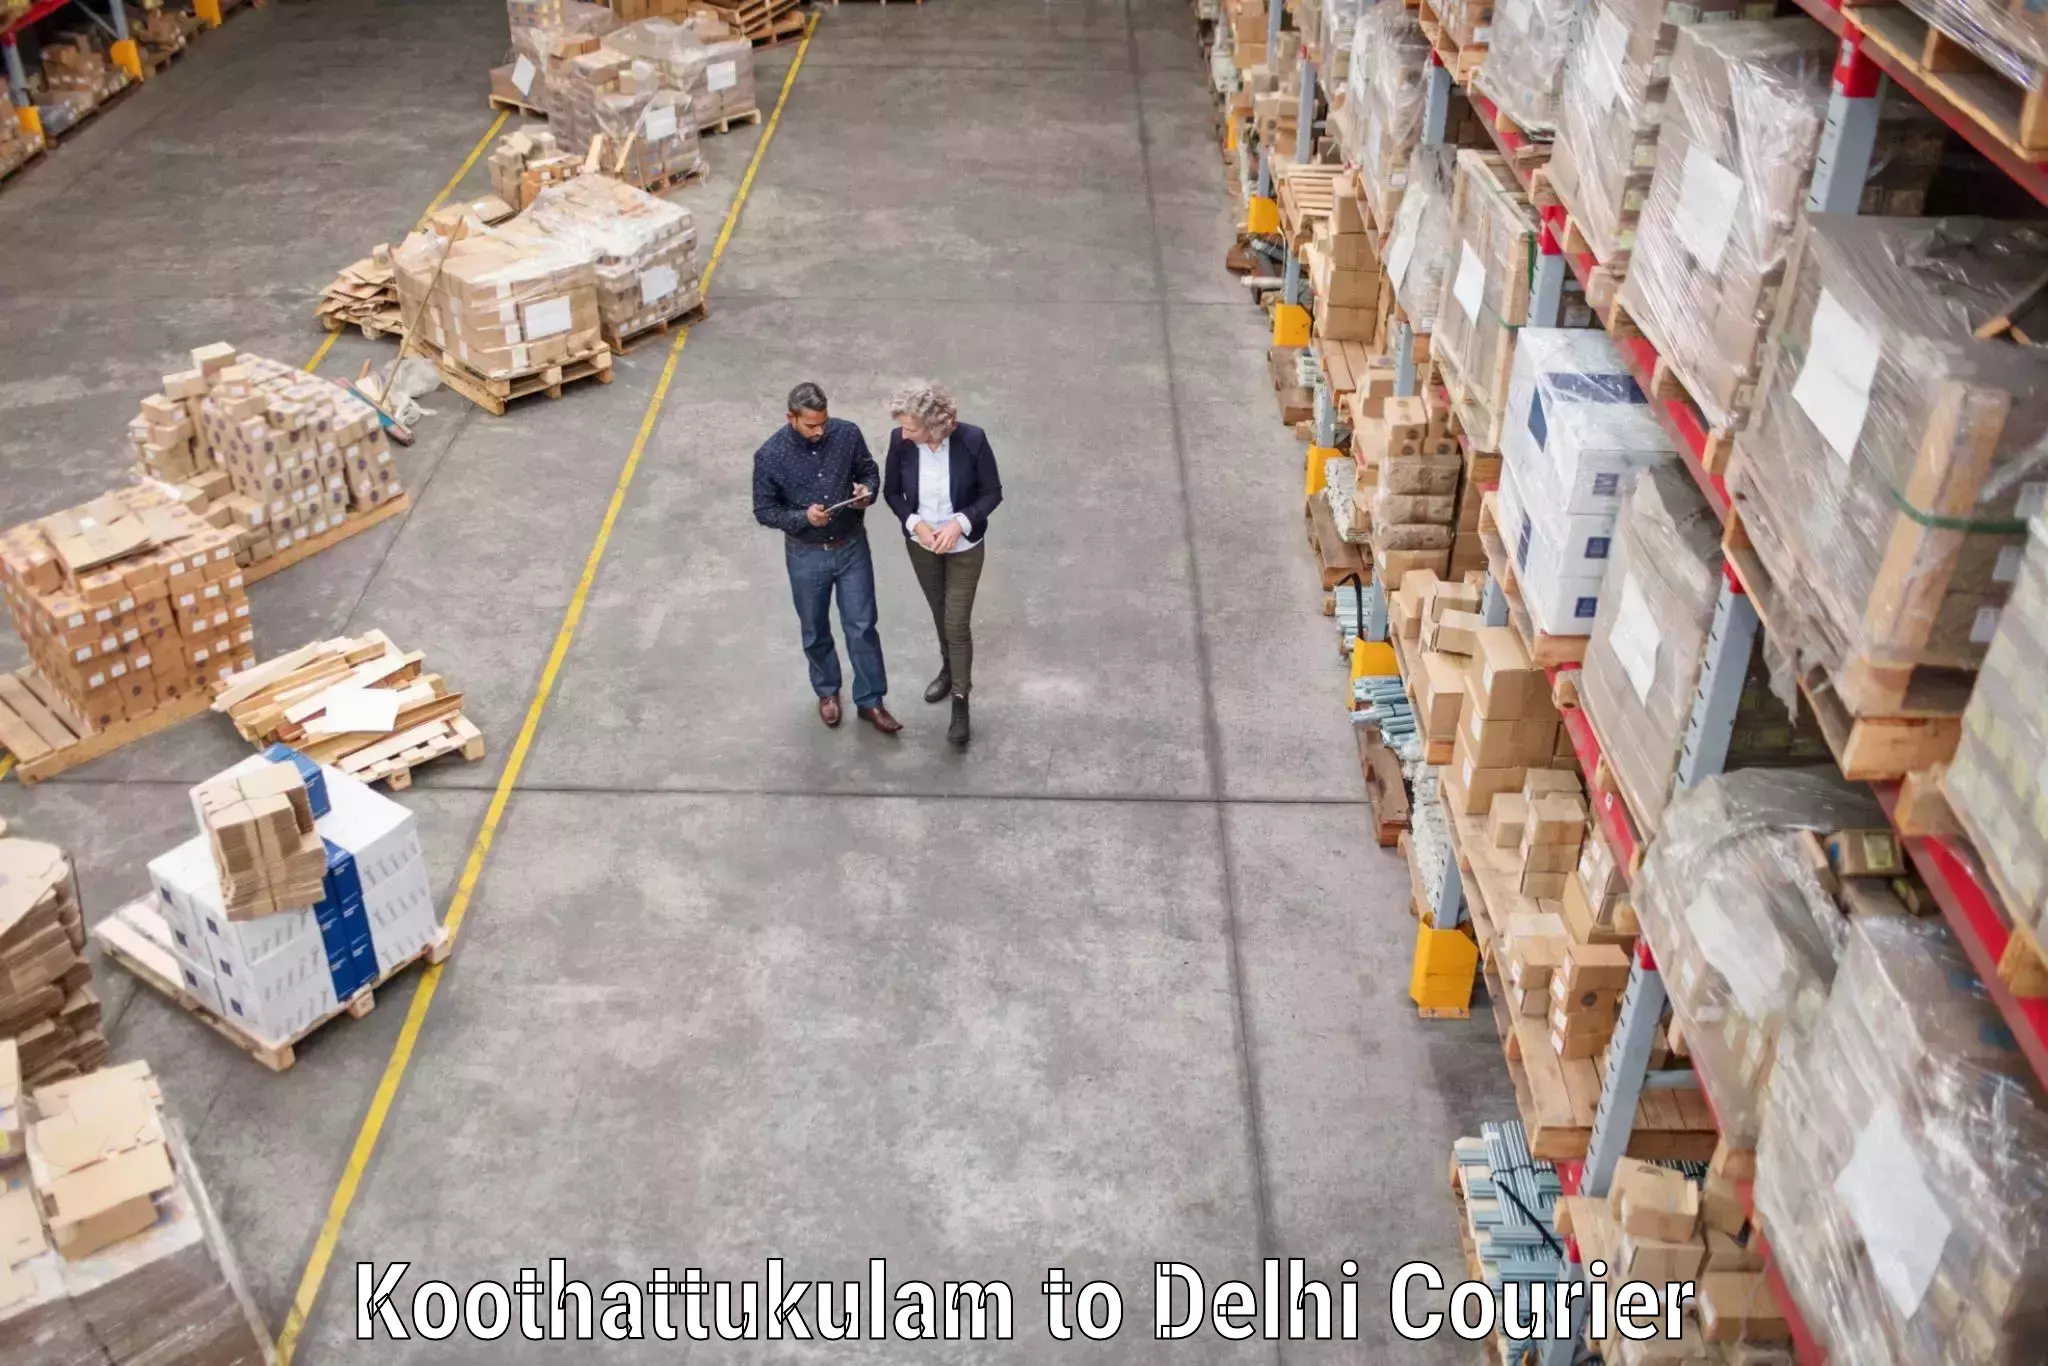 Professional movers Koothattukulam to IIT Delhi